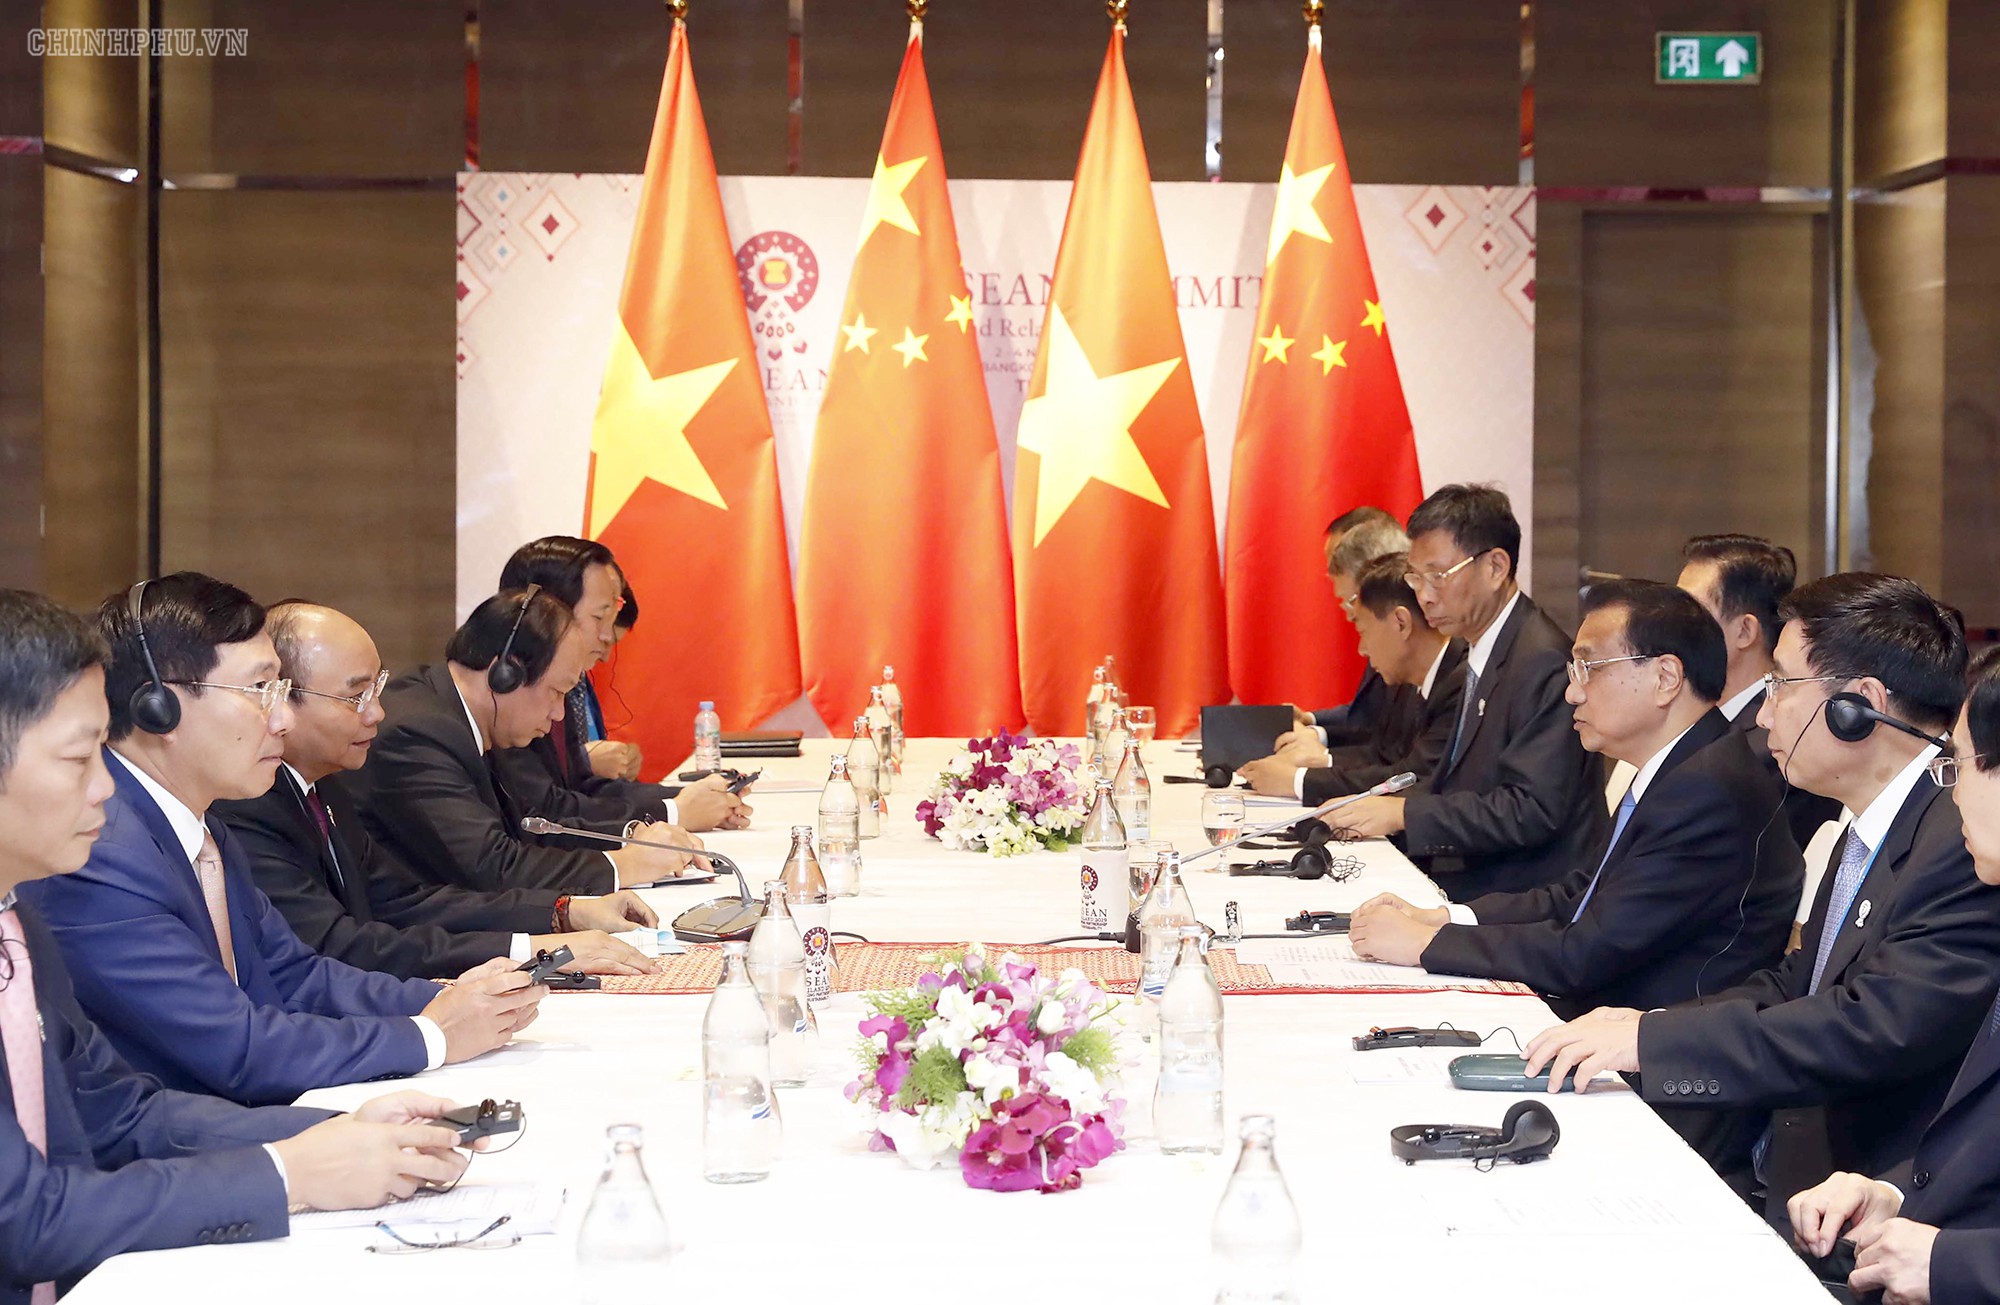 Chùm ảnh: Thủ tướng dự Hội nghị cấp cao ASEAN và gặp lãnh đạo các nước - Ảnh 8.